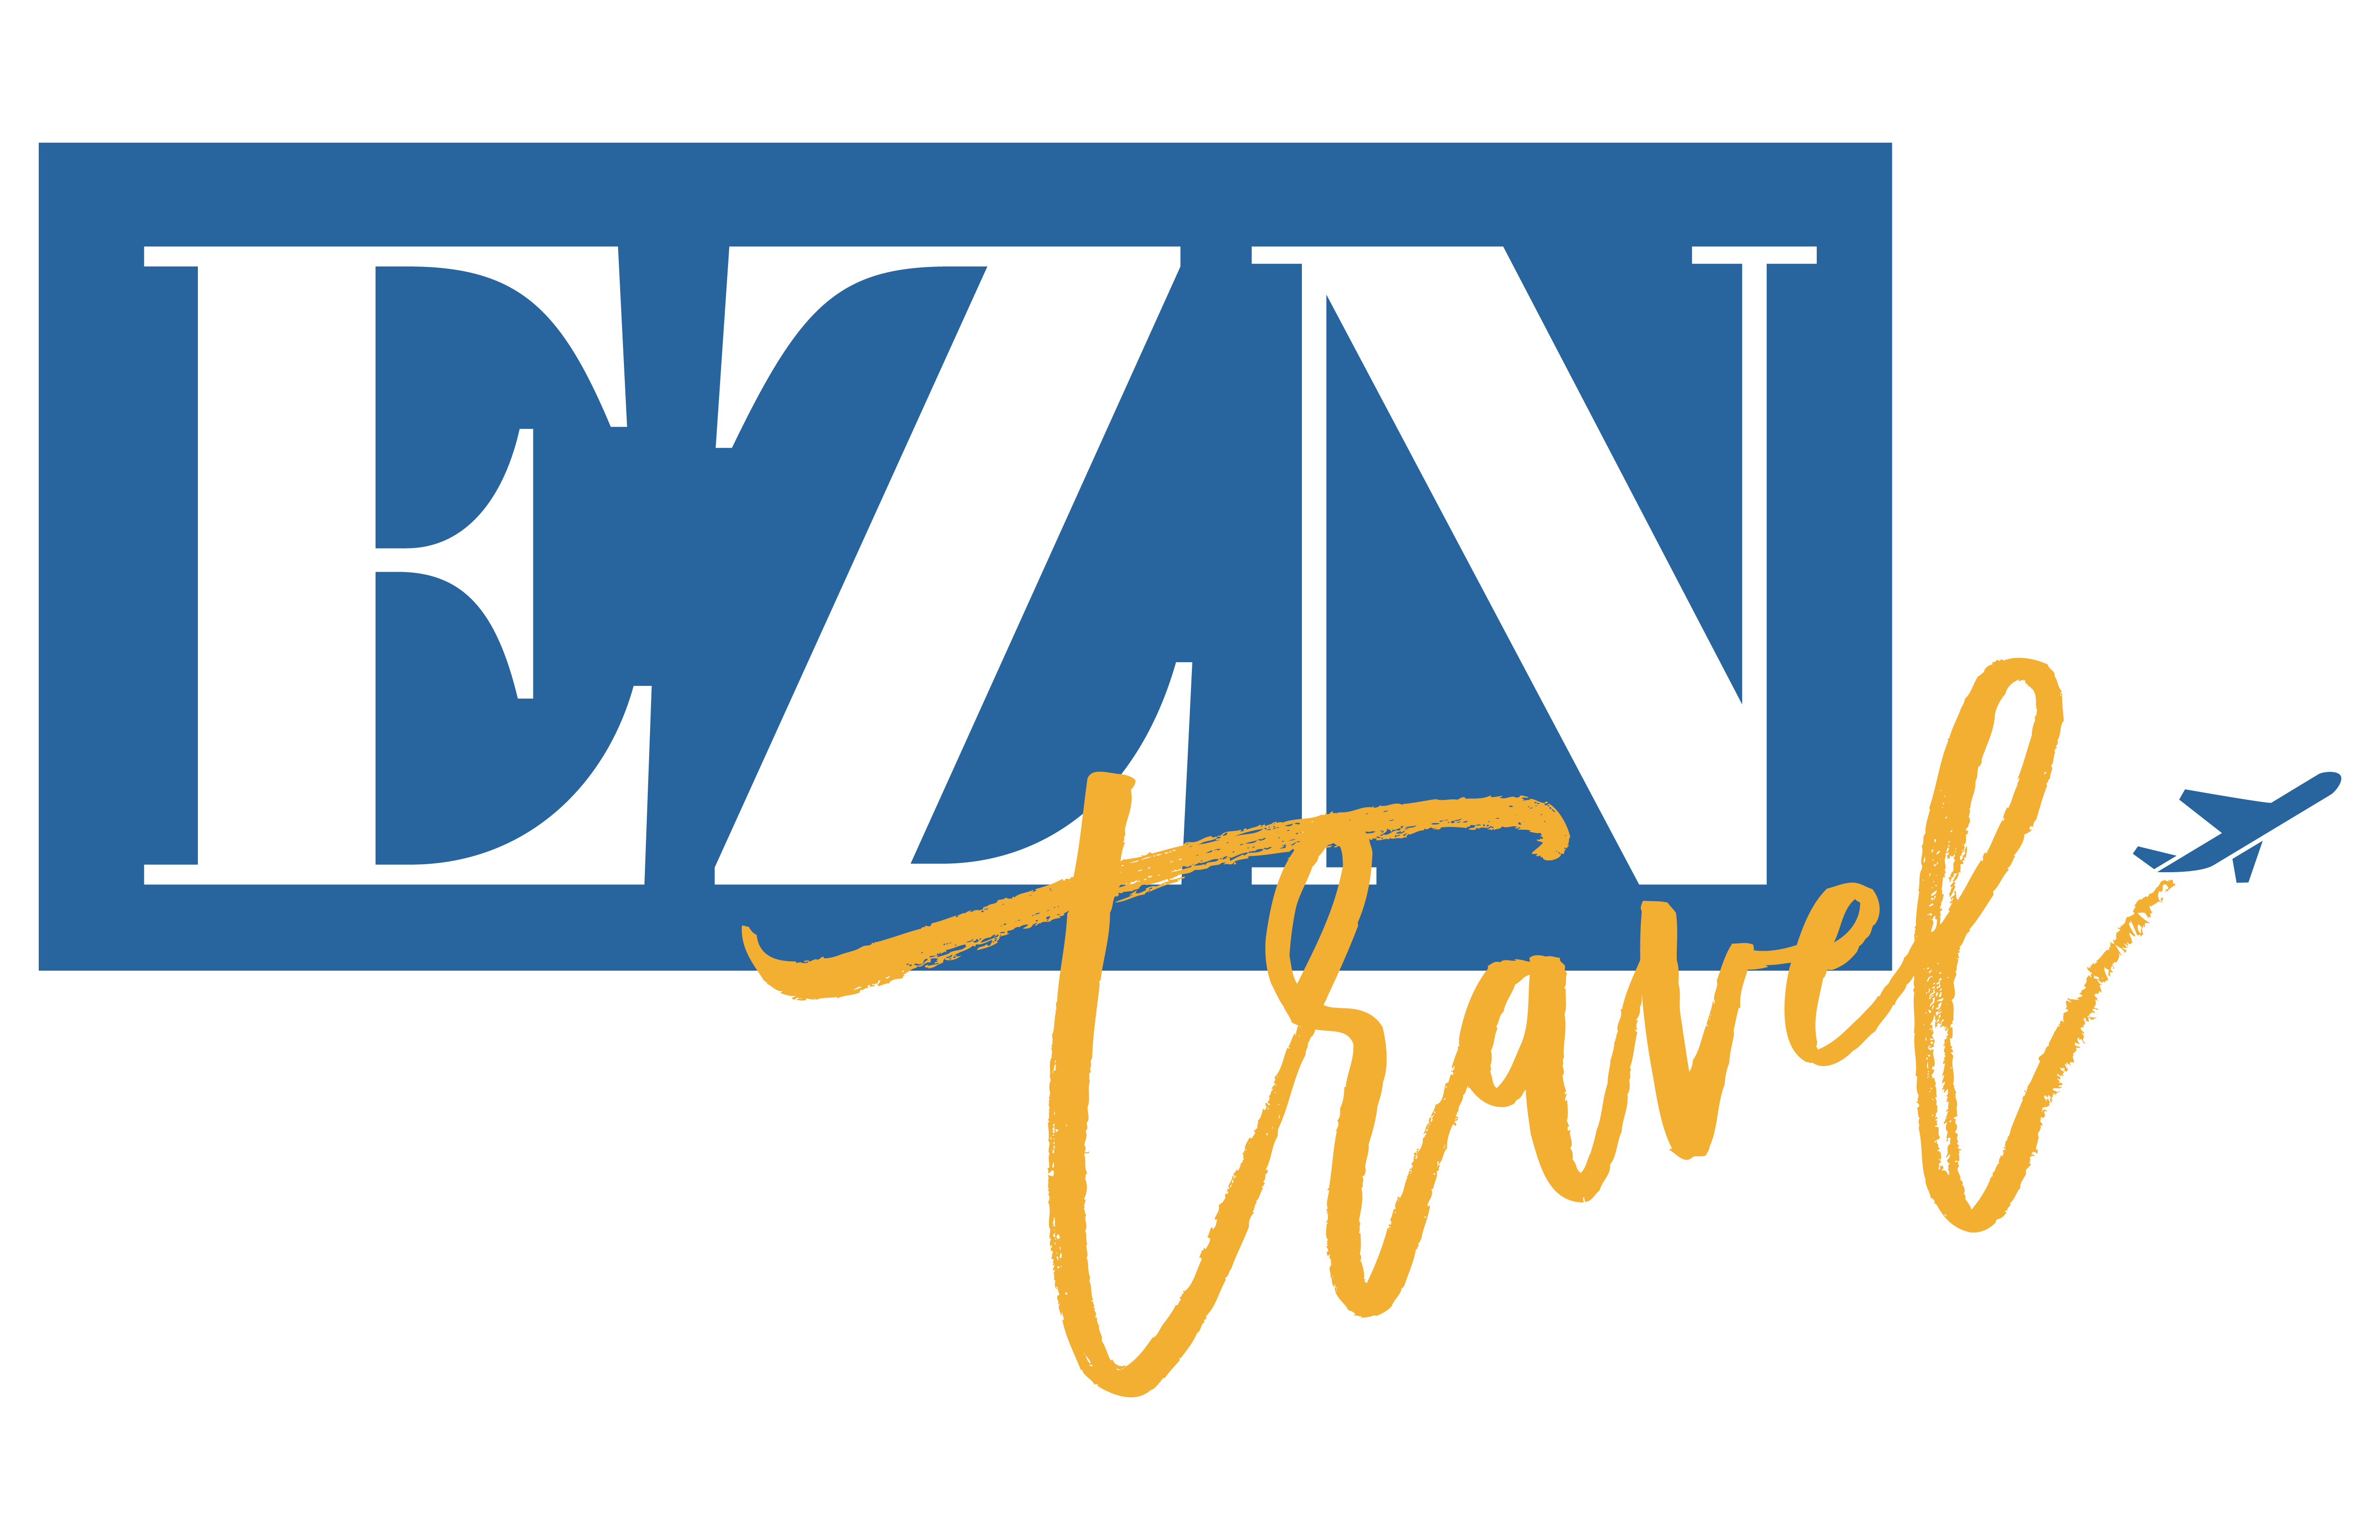 EZN Travel : Brand Short Description Type Here.